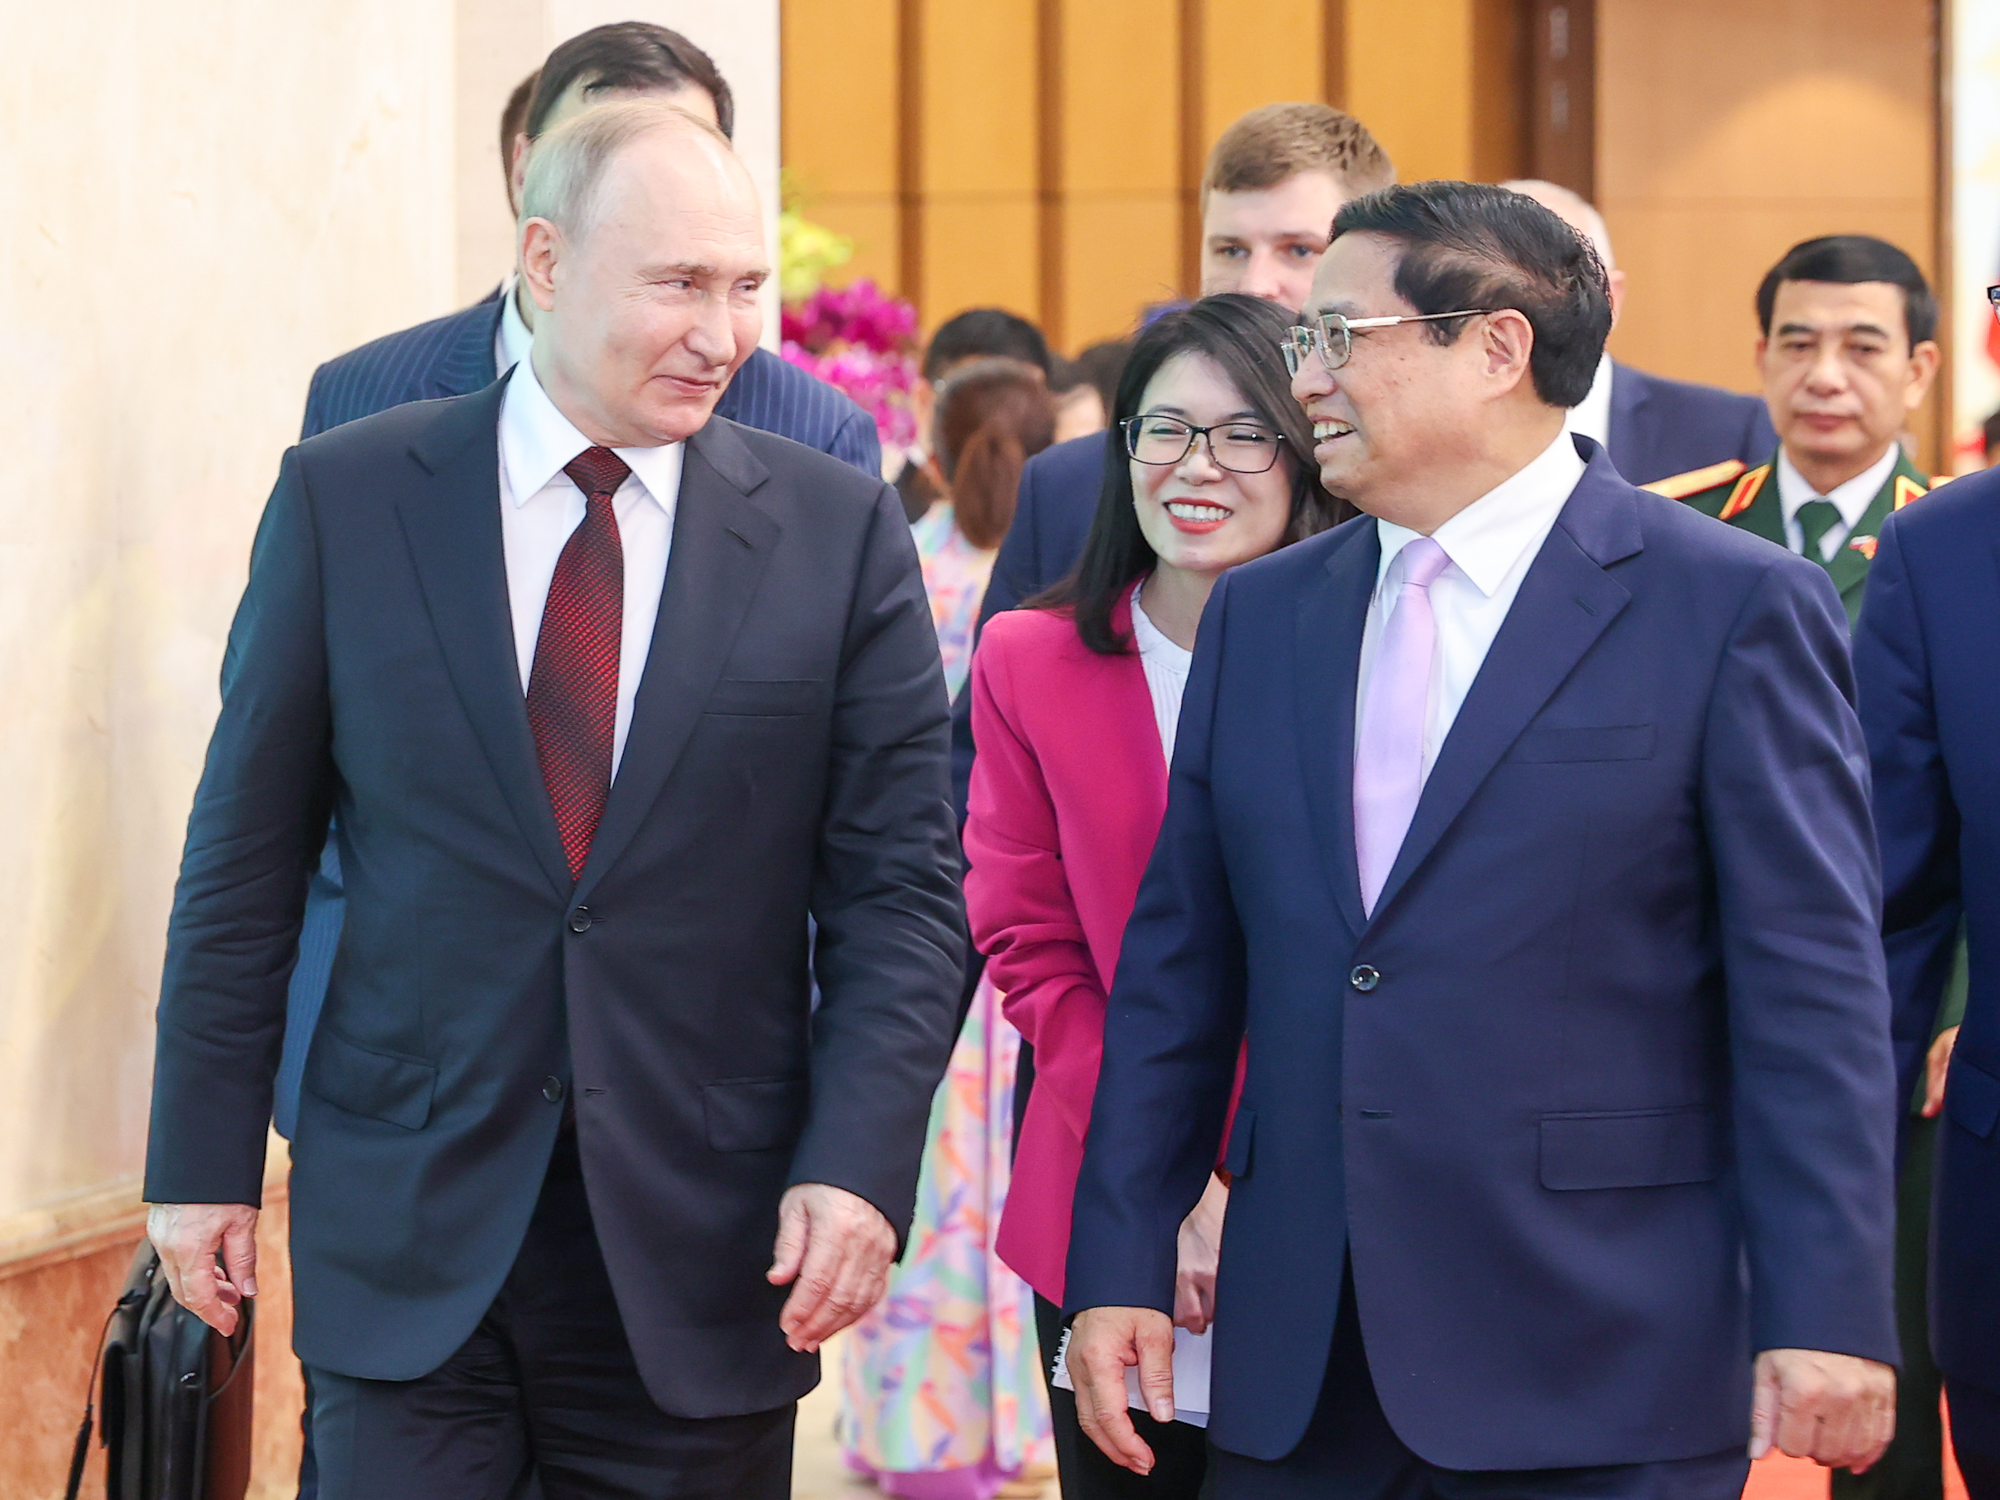 Tổng thống Putin cảm ơn sự đón tiếp thân tình, trọng thị, cũng như những tình cảm tốt đẹp mà lãnh đạo và nhân dân Việt Nam dành cho ông - Ảnh: VGP/Nhật Bắc